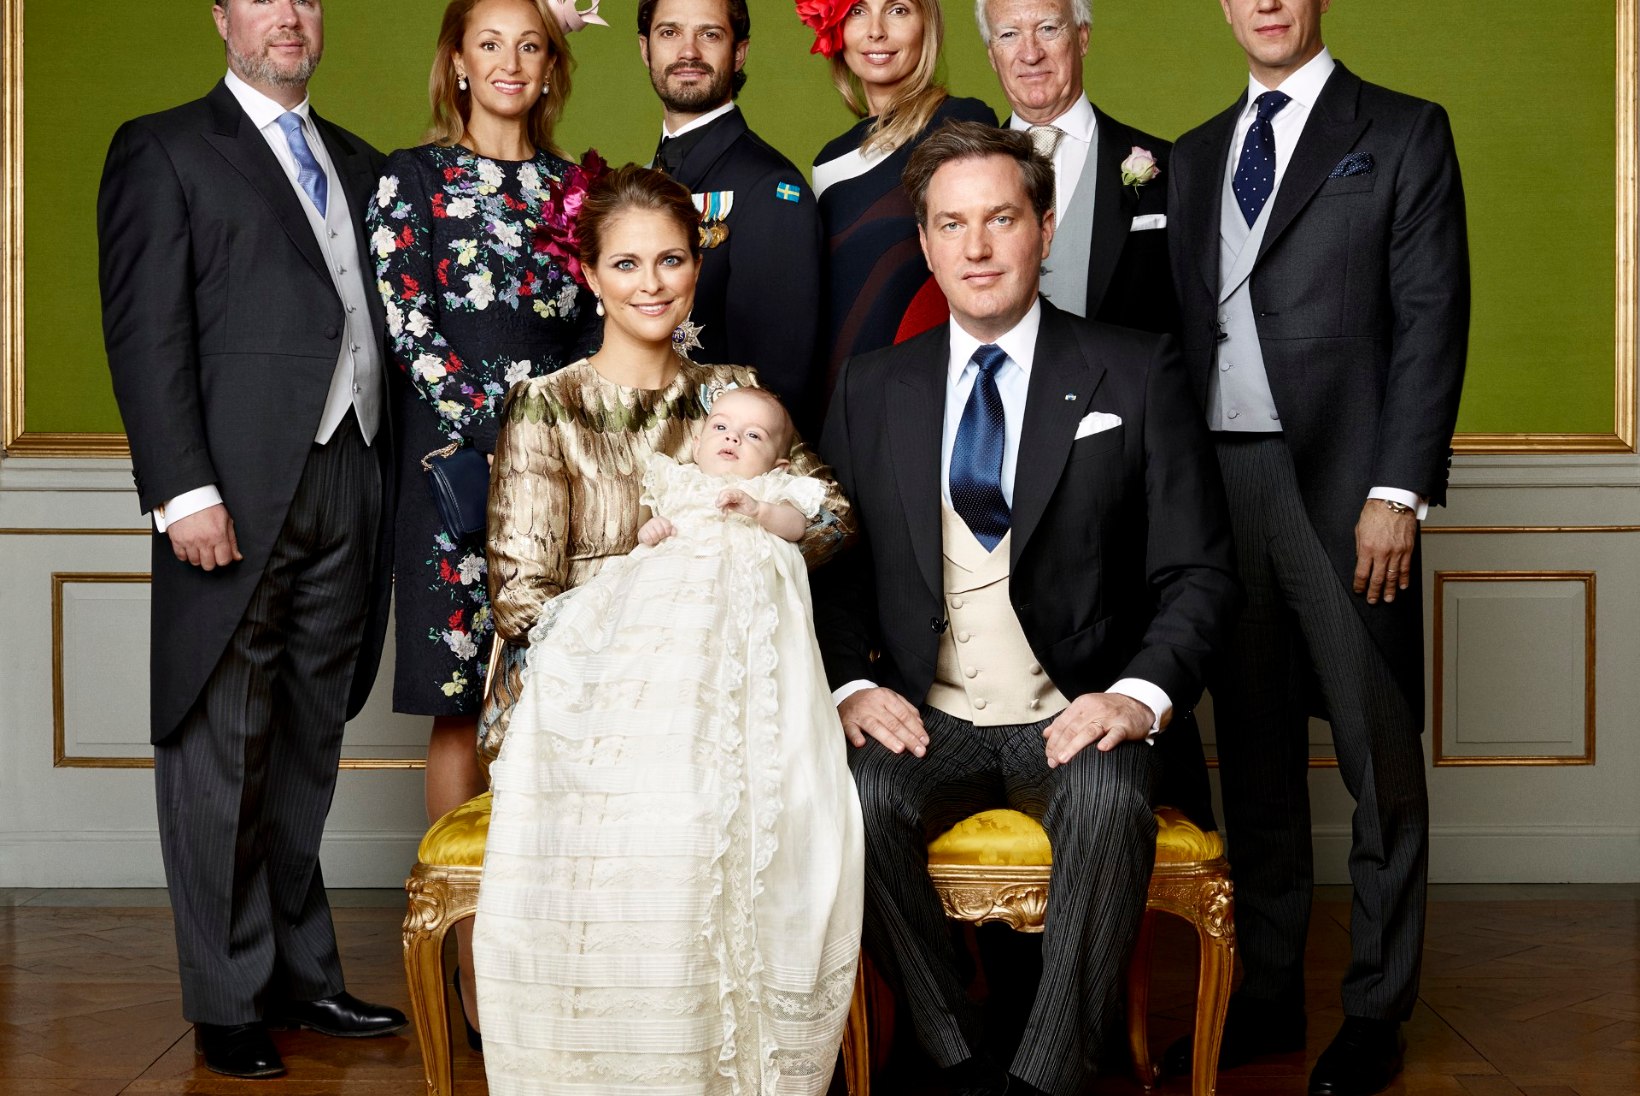 FOTOD | Rootsi kuninglik perekond avalikustas kaunid perepildid pisiprints Nicolase ristimiselt